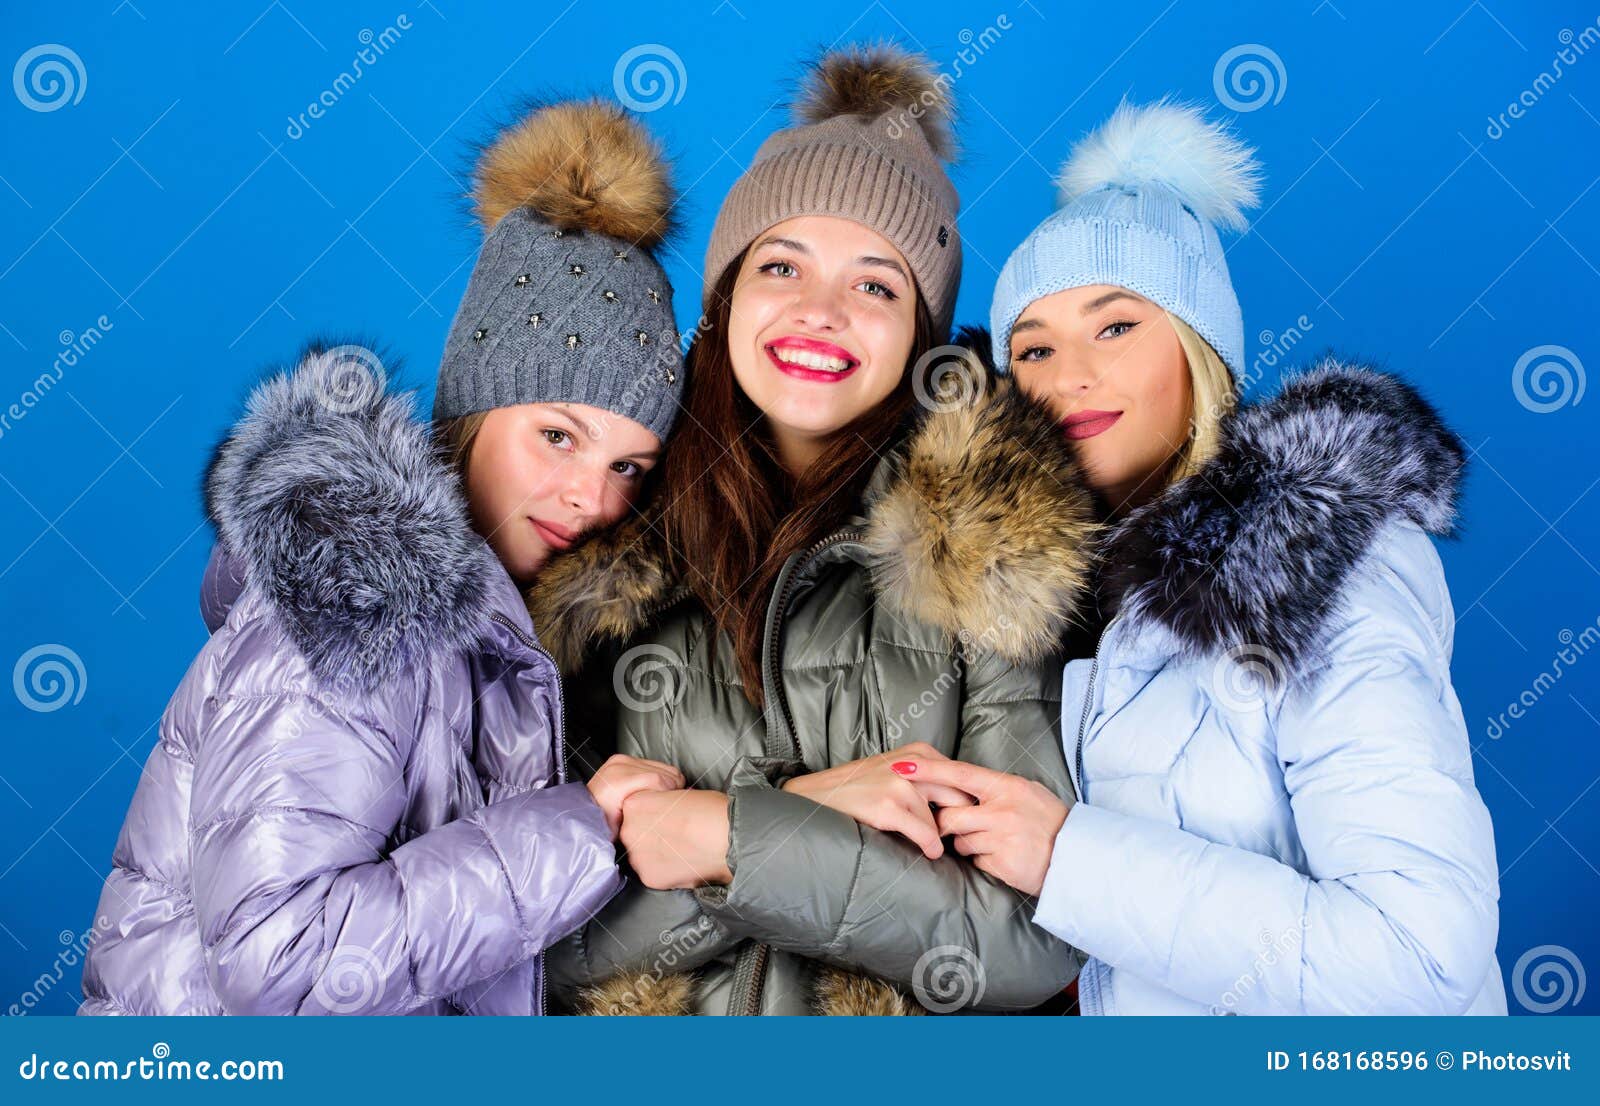 Γυναικείο κατάστημα ρούχων Μοντέρνα γυναικεία στολή Πανέμορφες κοπέλες με  μακιγιάζ που αγκαλιάζουν Γυναικεία μόδα Κορίτσια φίλοι Στοκ Εικόνες -  εικόνα από : 168168596